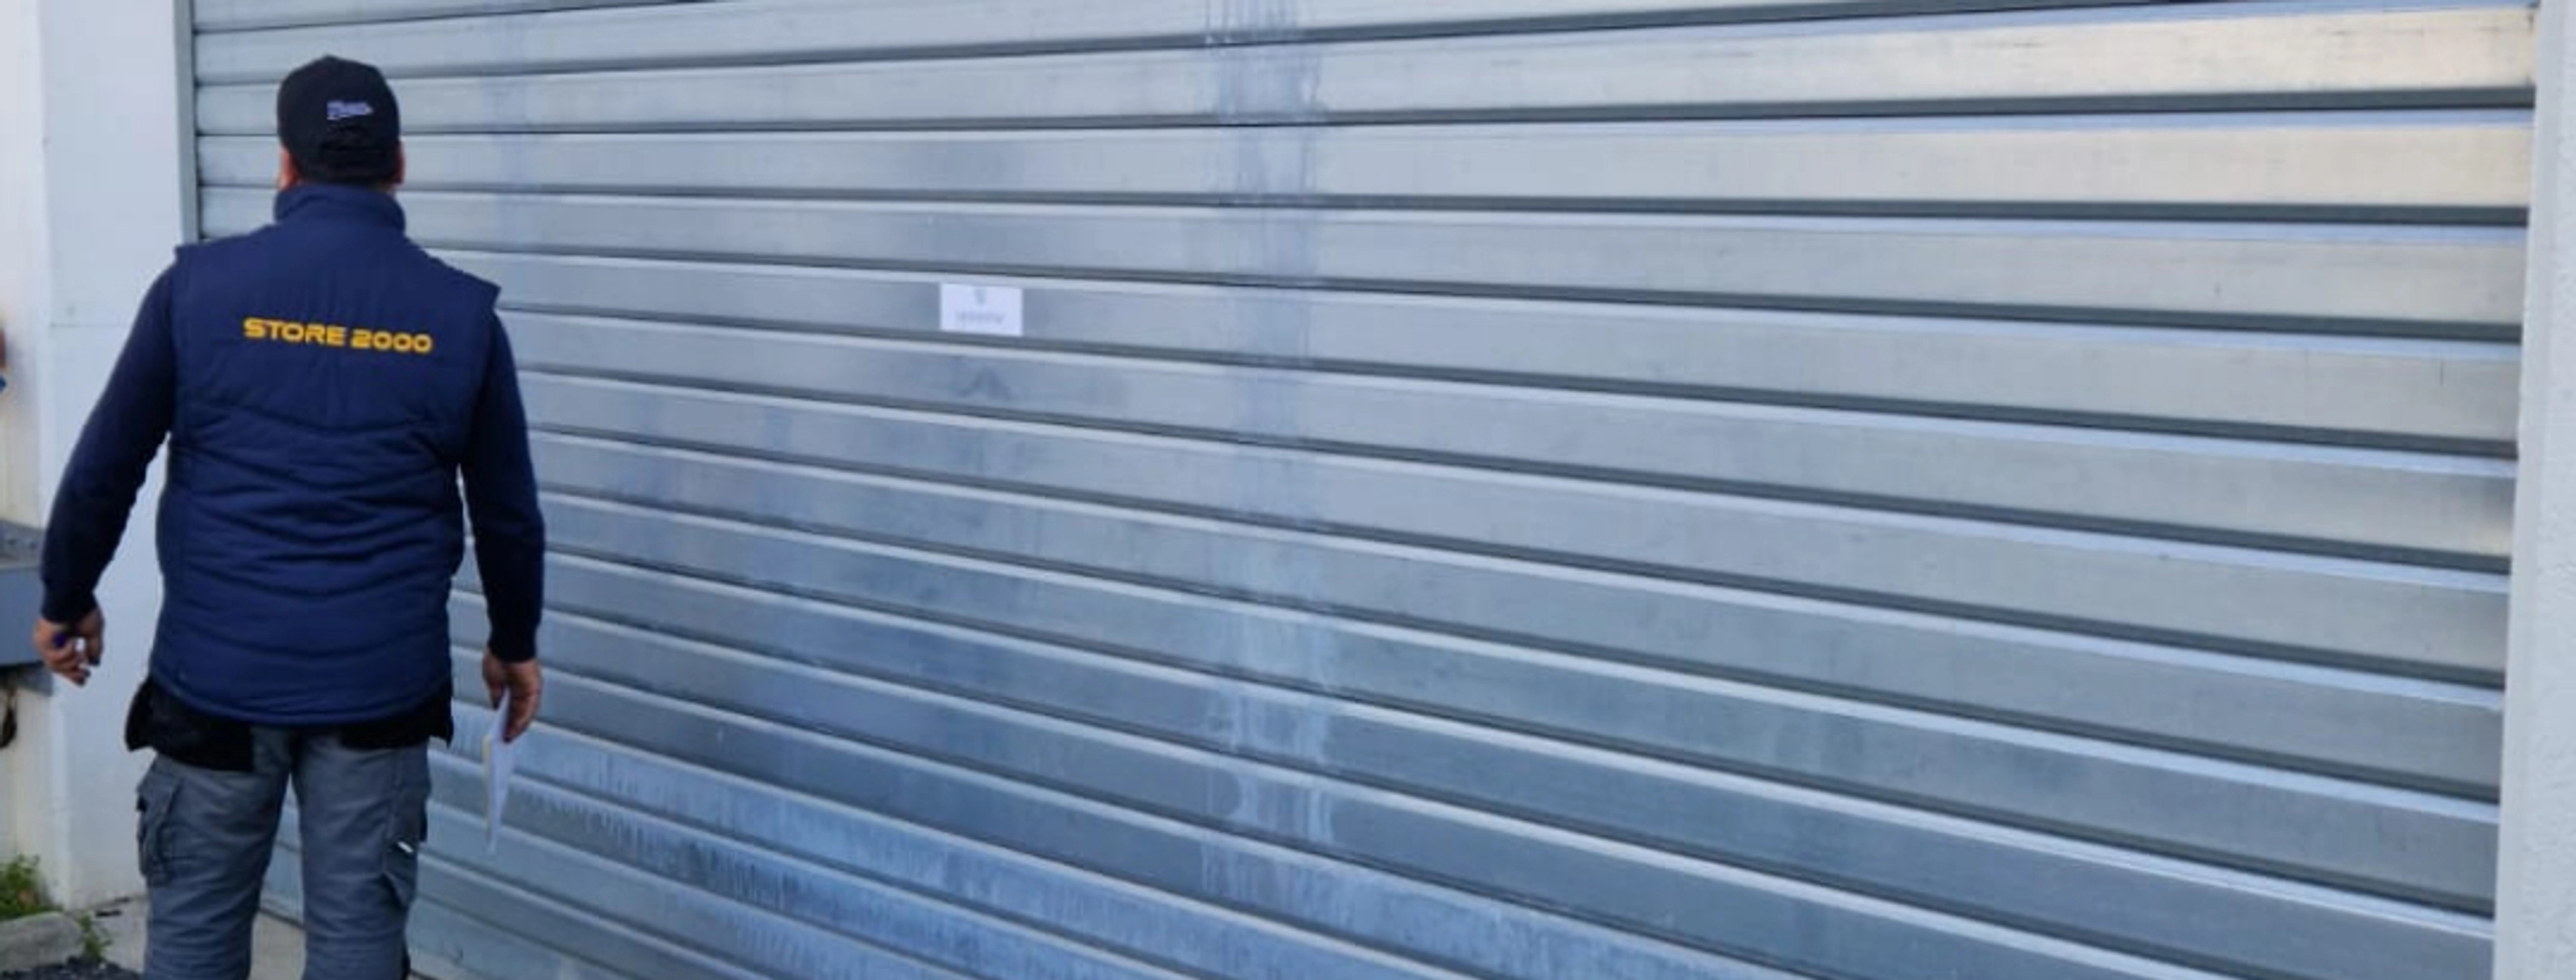 Réparation de rideaux métalliques à Toulouse : pourquoi choisir Store 2000 ? 